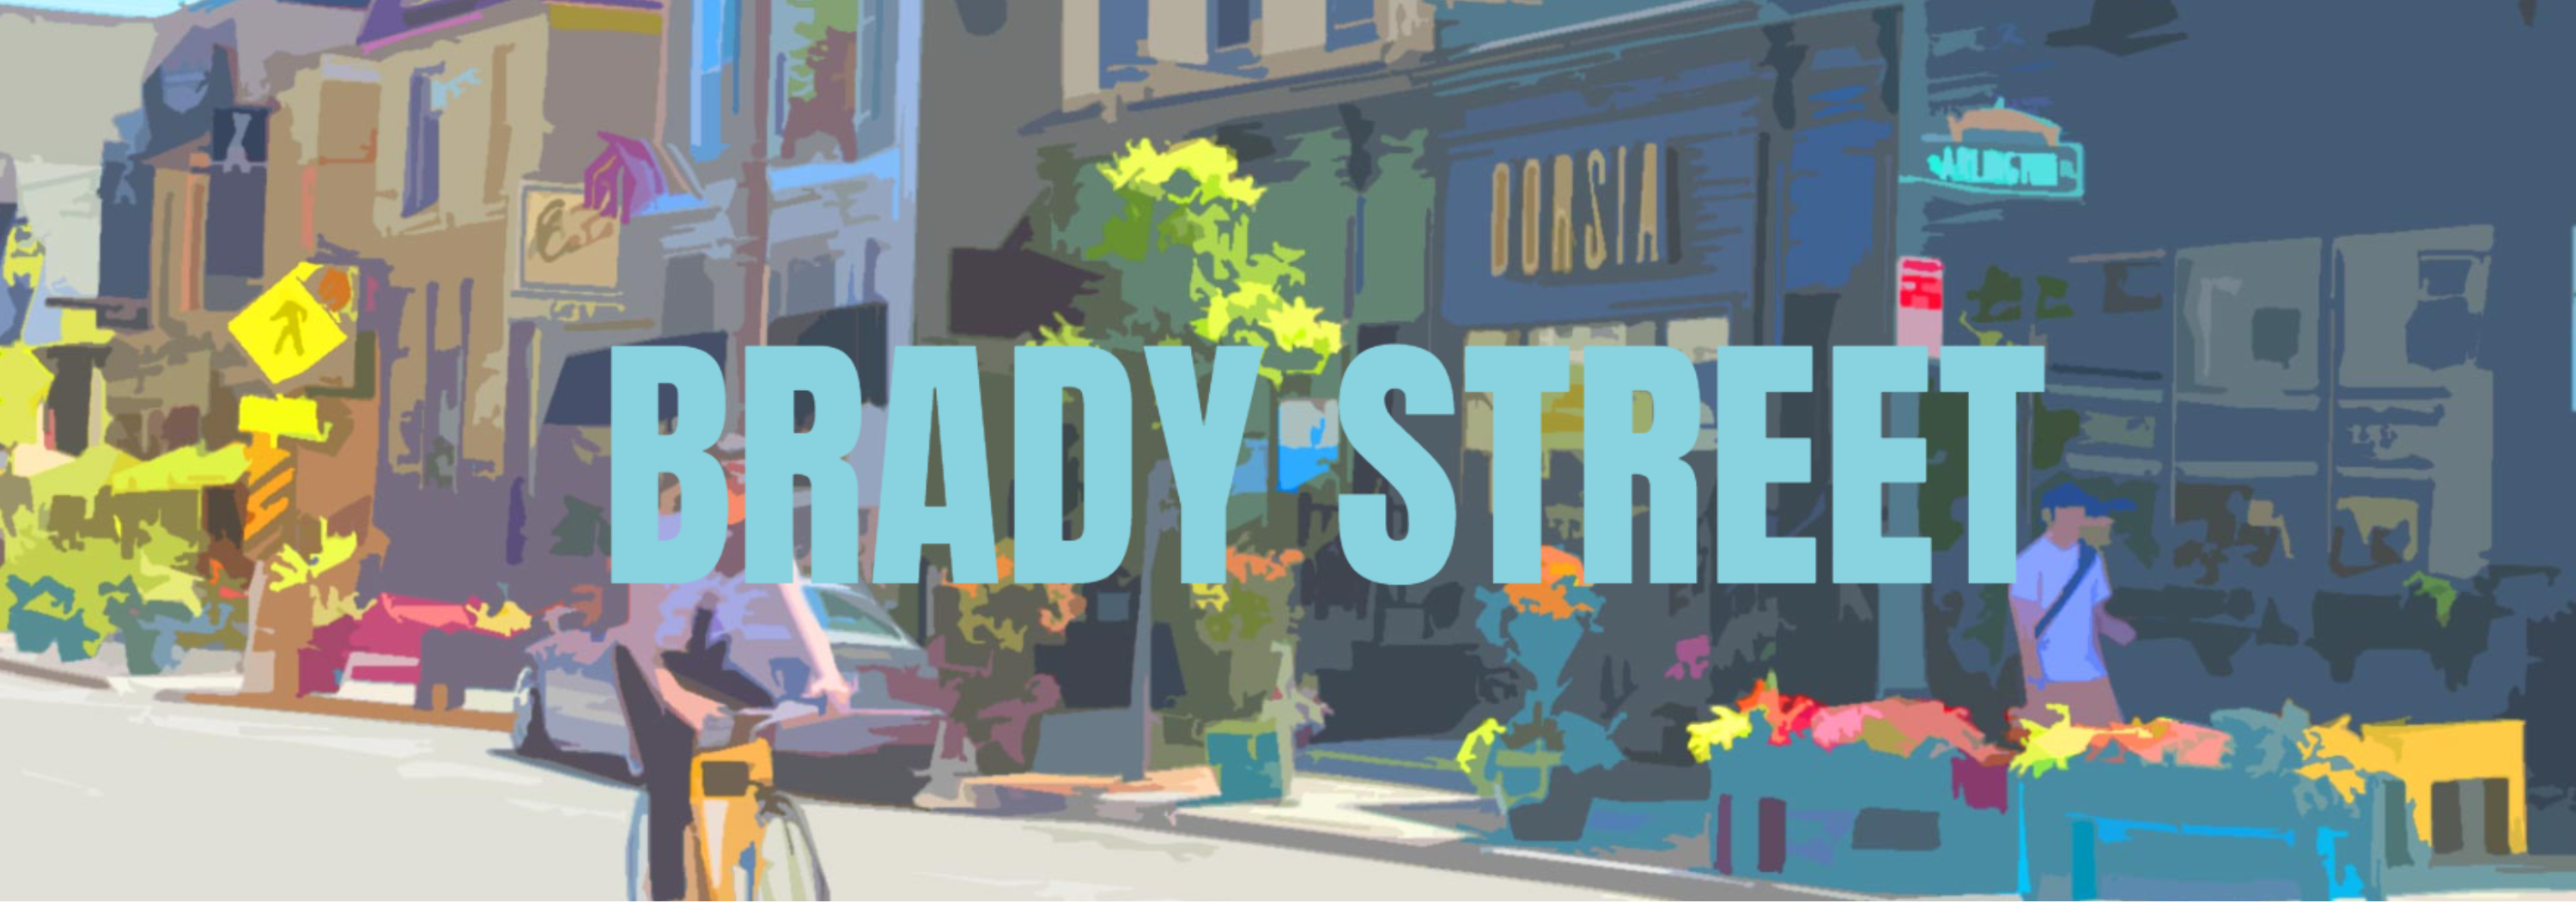 Brady Street Pedestrianization Study